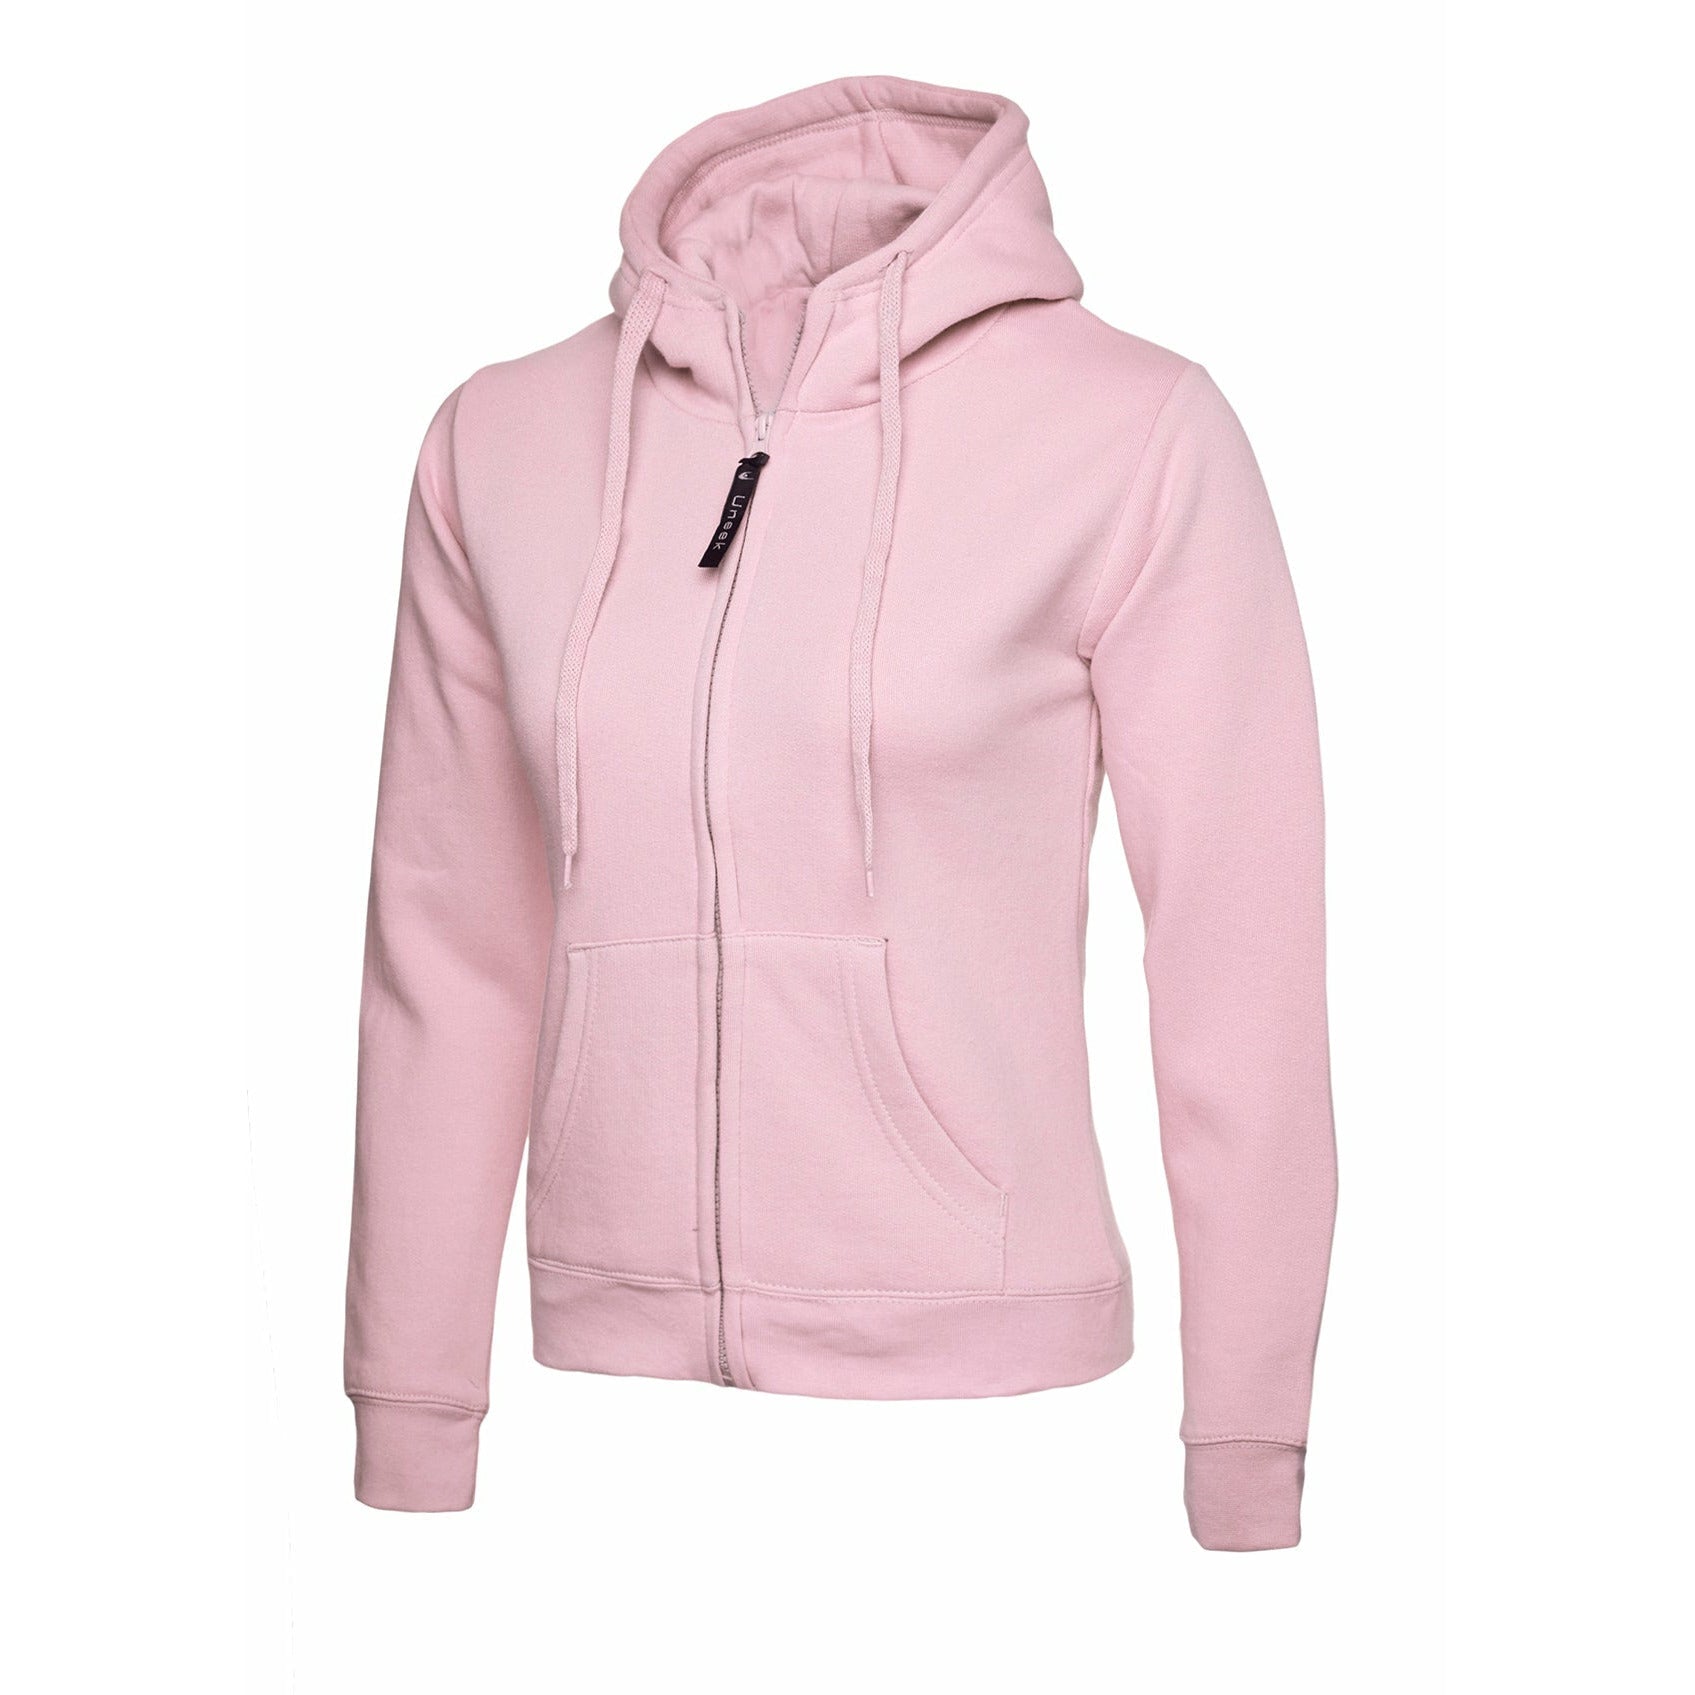 Ladies Classic Full Zip Hooded Sweatshirt Pink